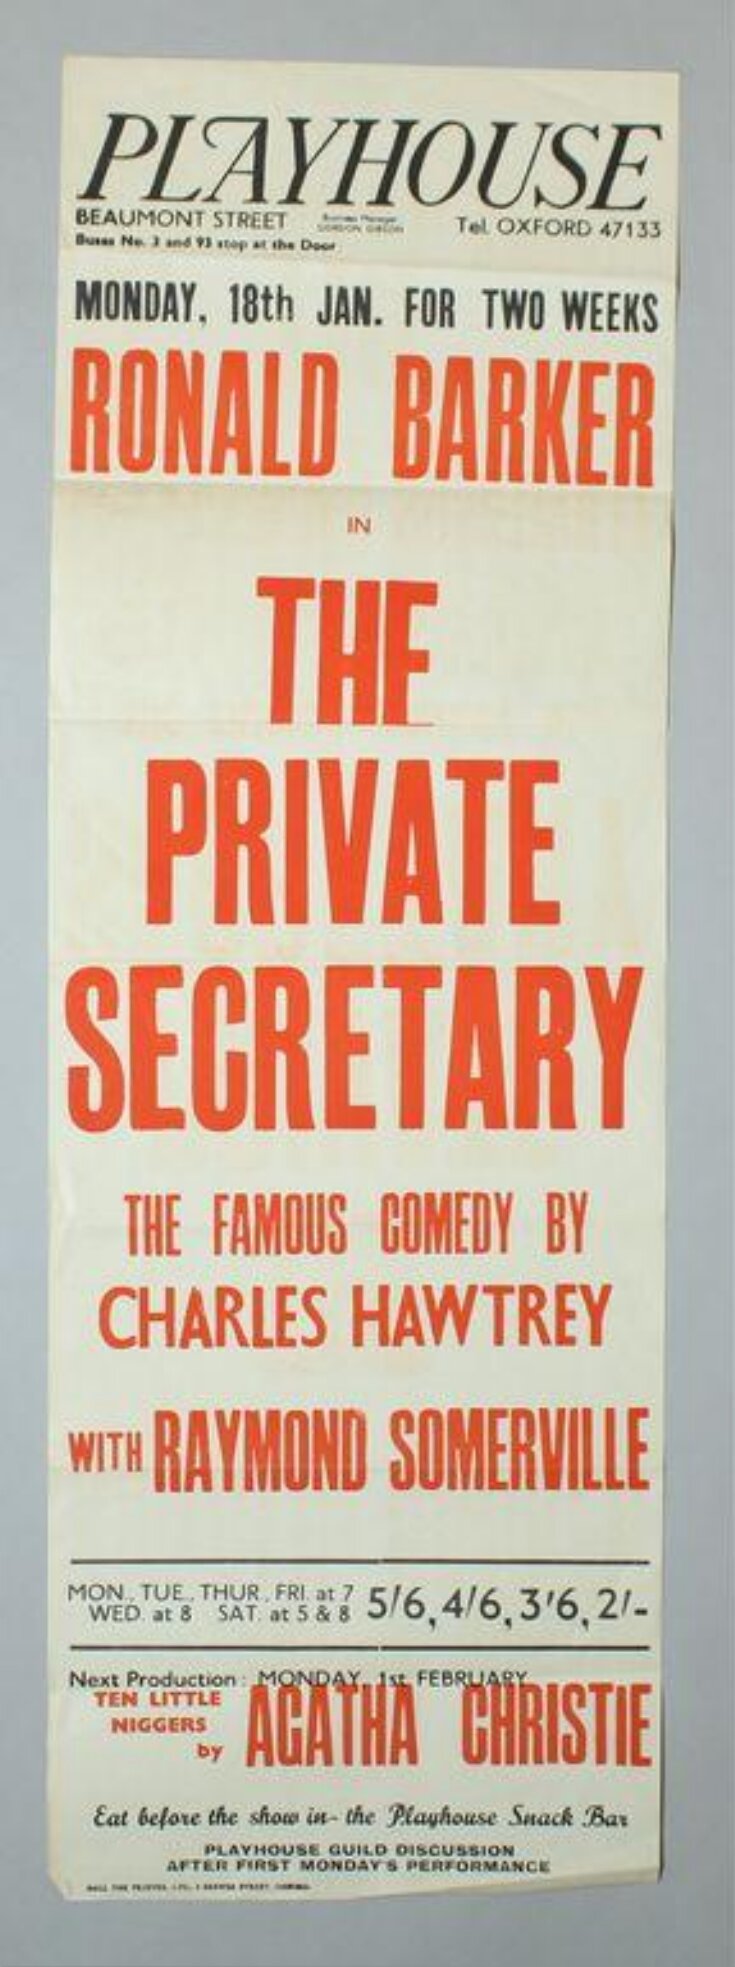 The Private Secretary image